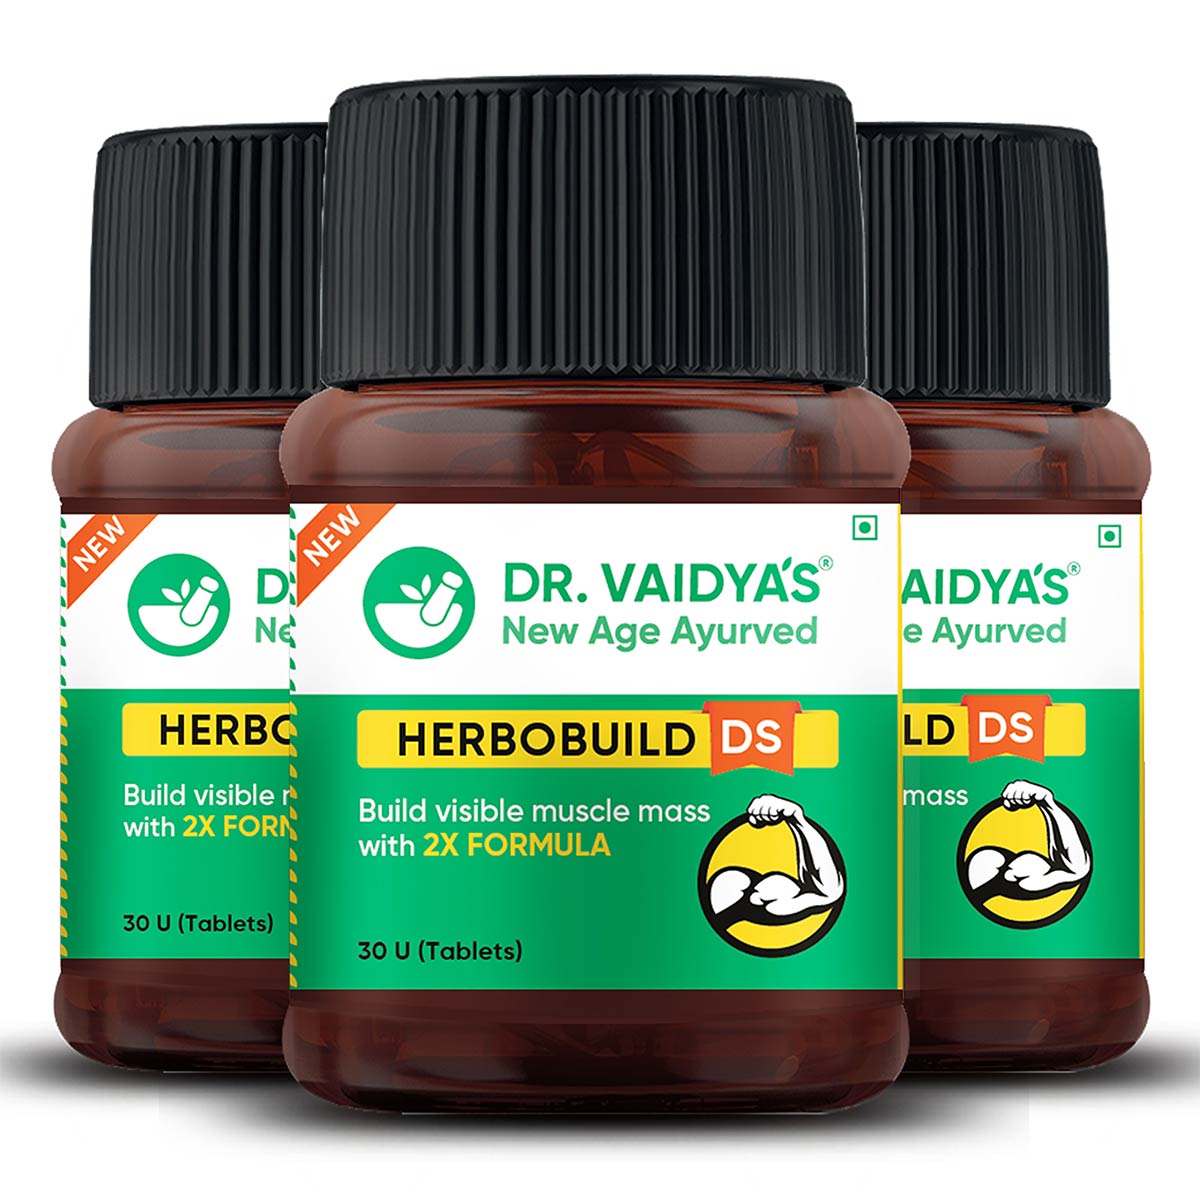 Dr. Vaidya's Herbobuild DS - Double Strength